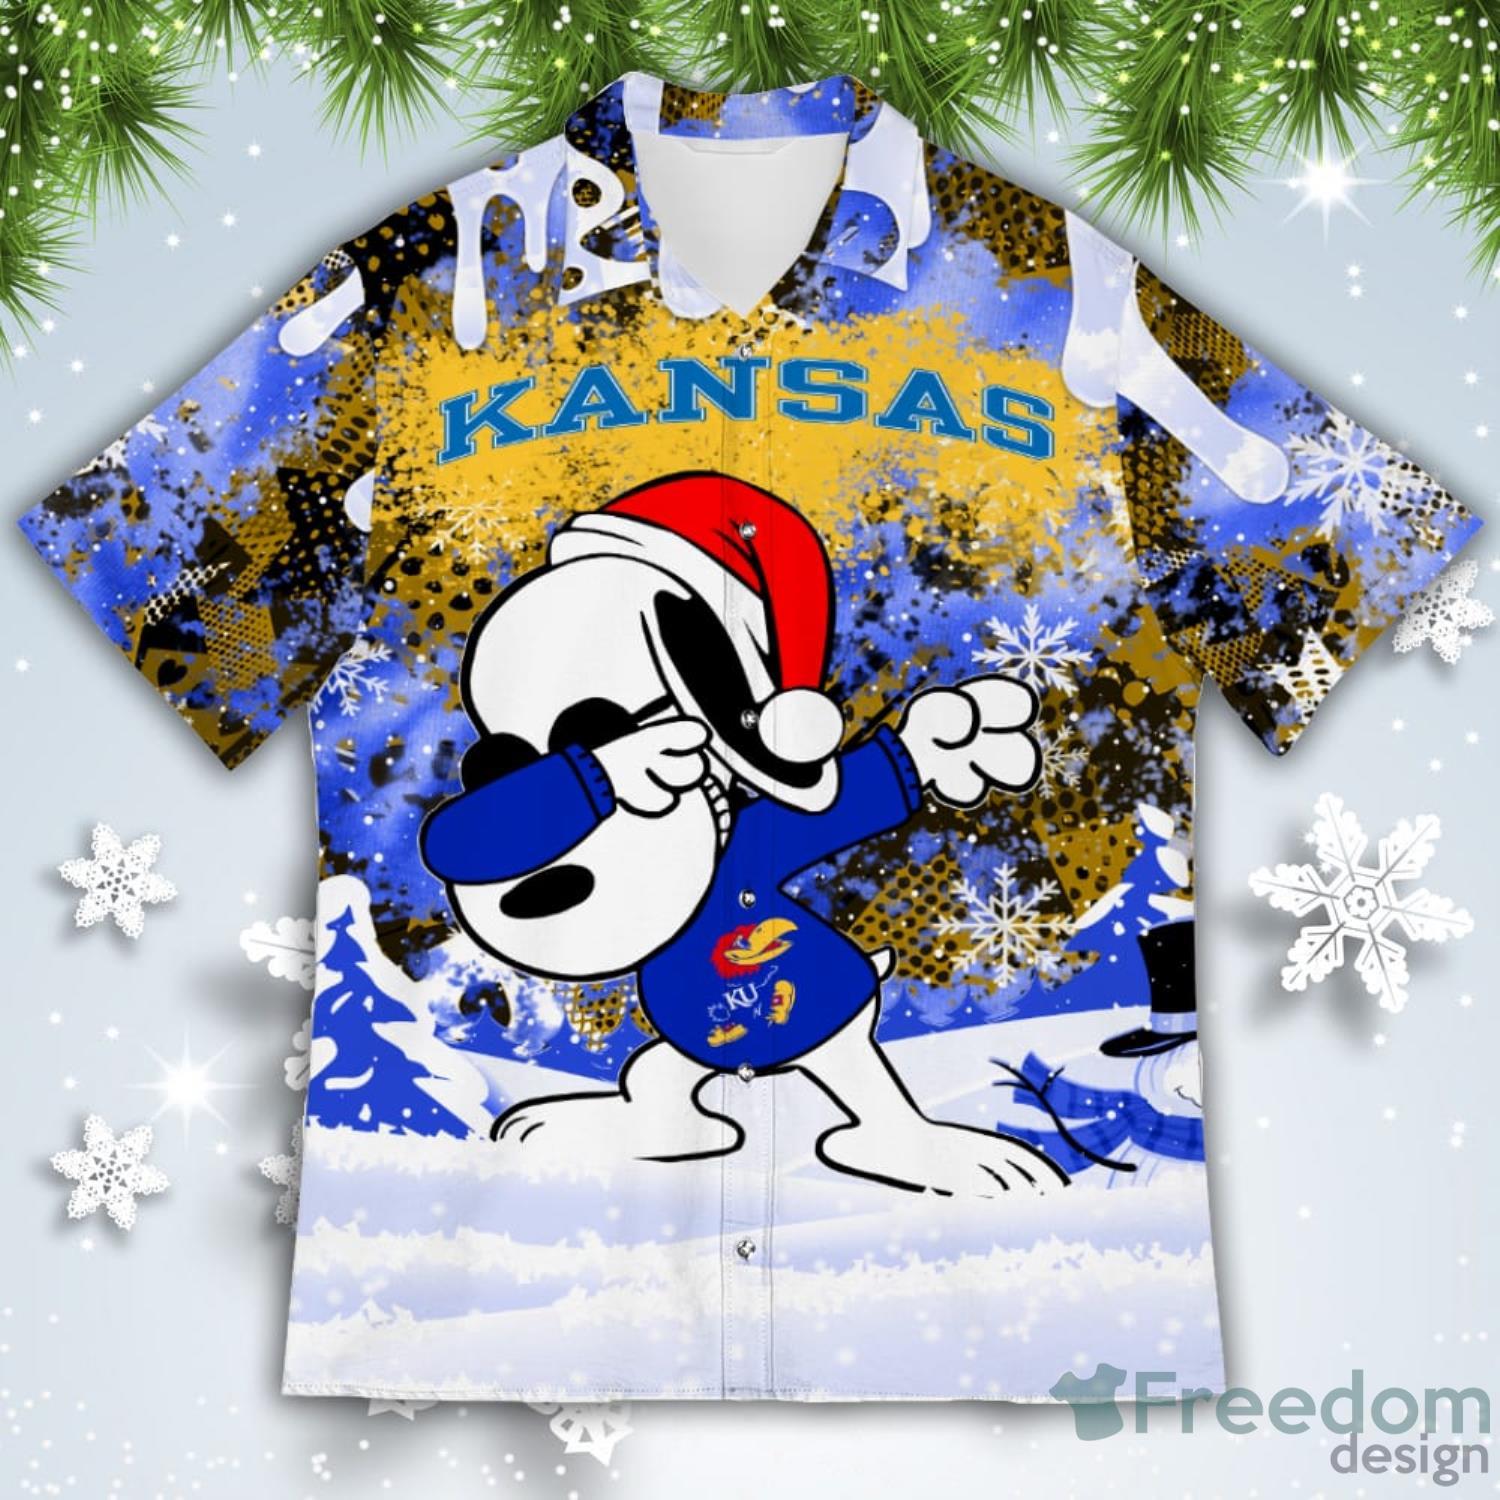 Kansas City Royals Snoopy Dabbing The Peanuts American Christmas